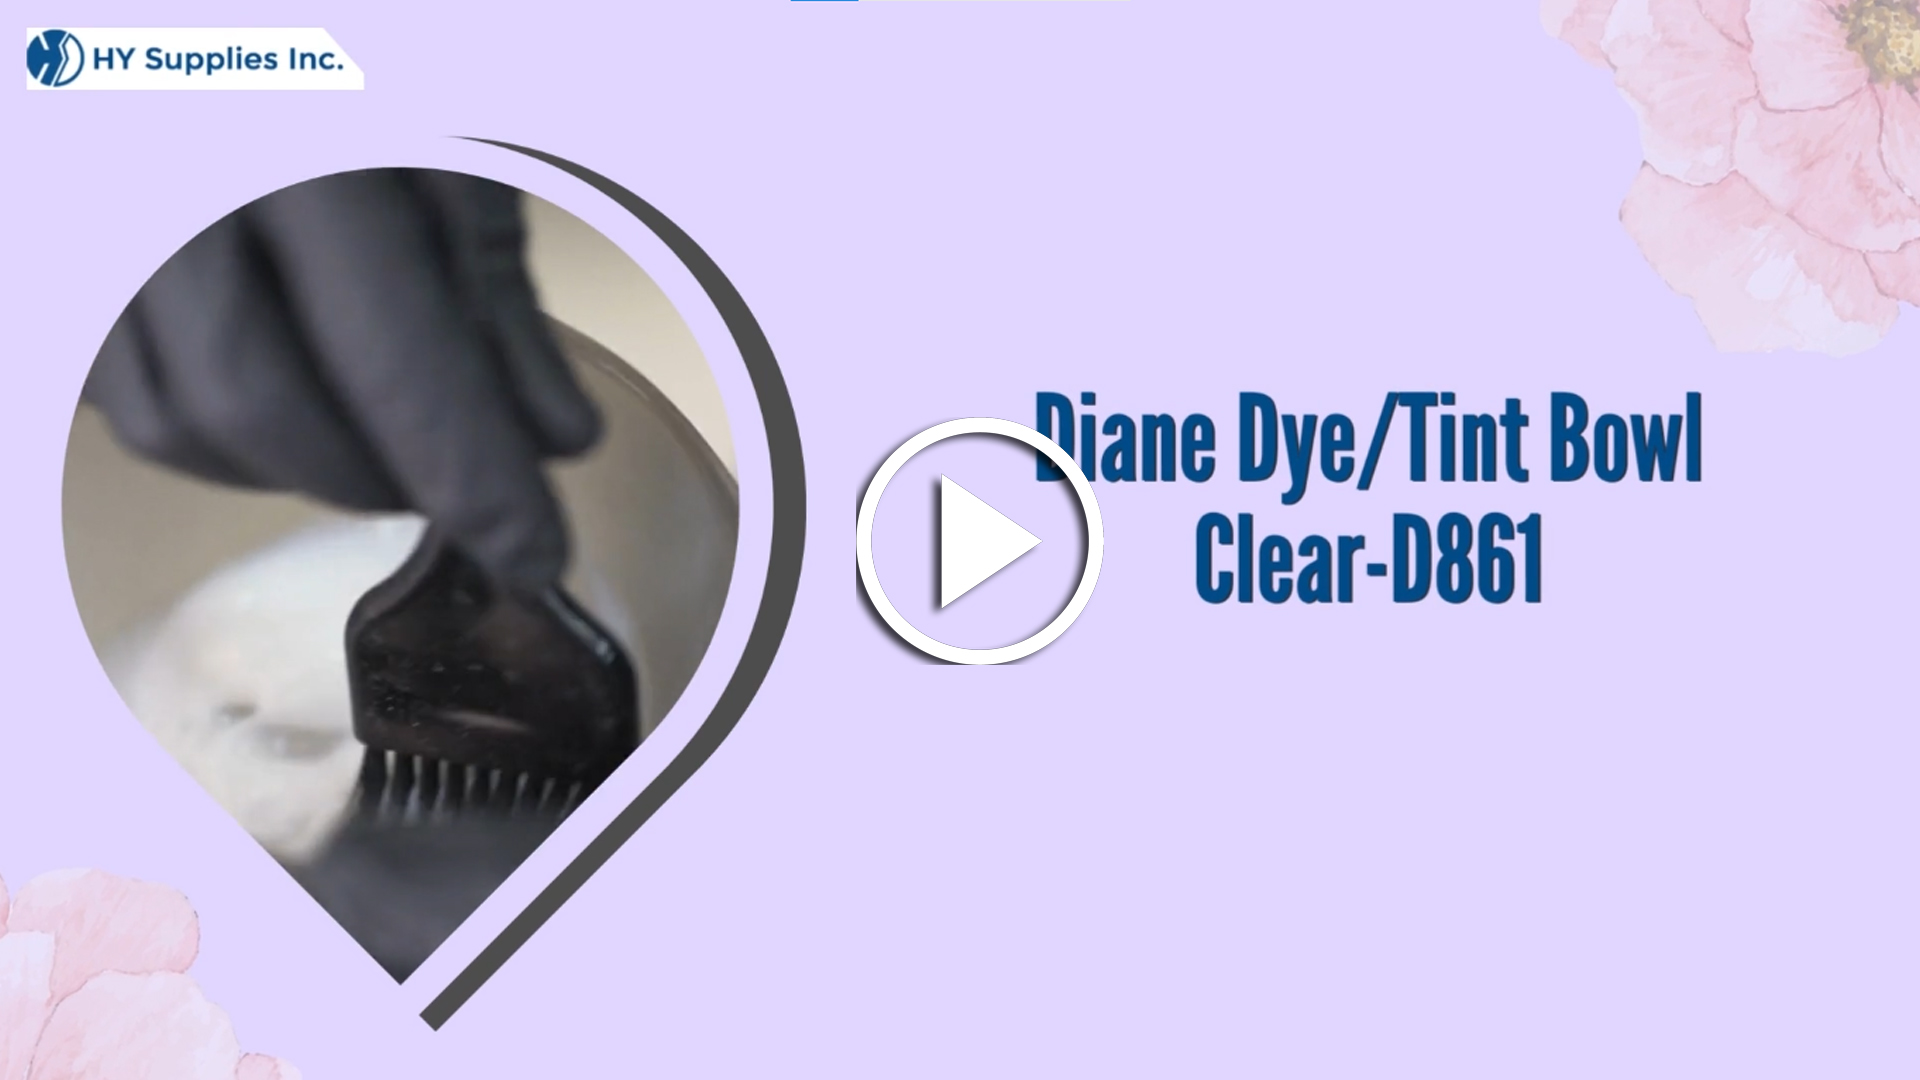 Diane Dye/Tint Bowl Clear-D861